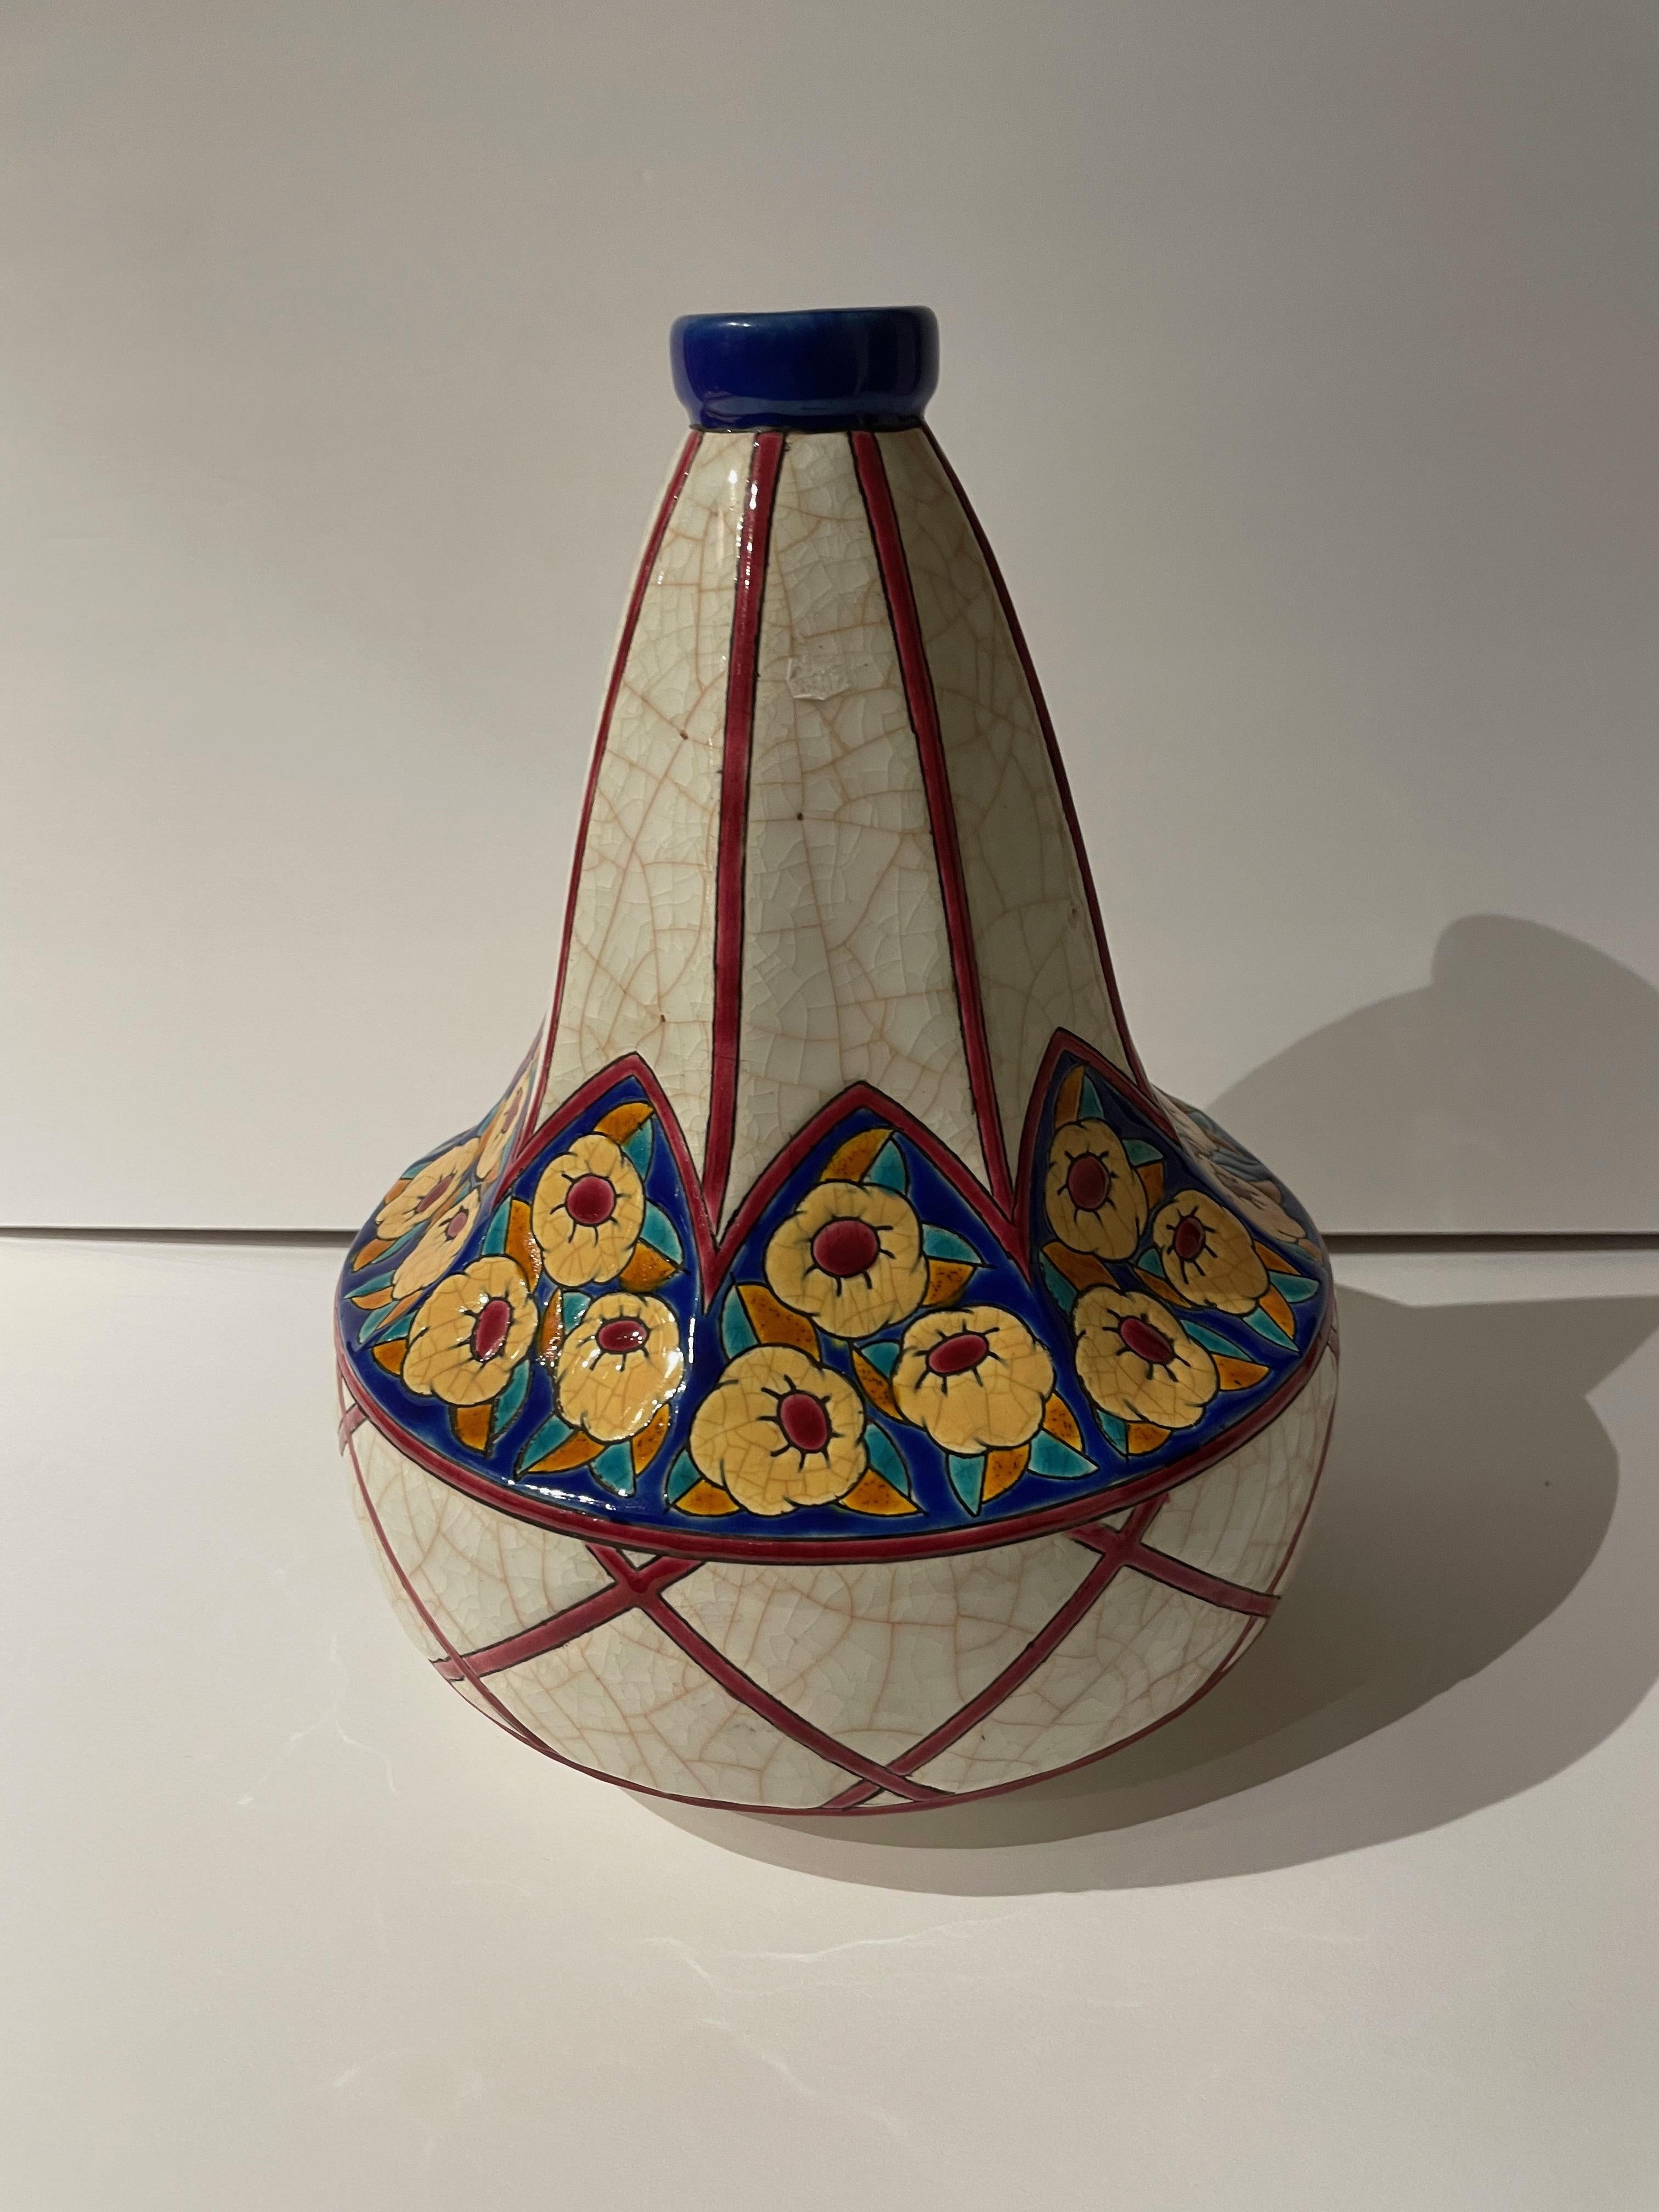 Un vase Art déco fabriqué par Longwy en France avec la technique de la céramique cloisonnée qui donne une dimension supplémentaire au design en sculptant de lourdes lignes dans le motif et en les remplissant d'une riche couleur émaillée. Cette pièce